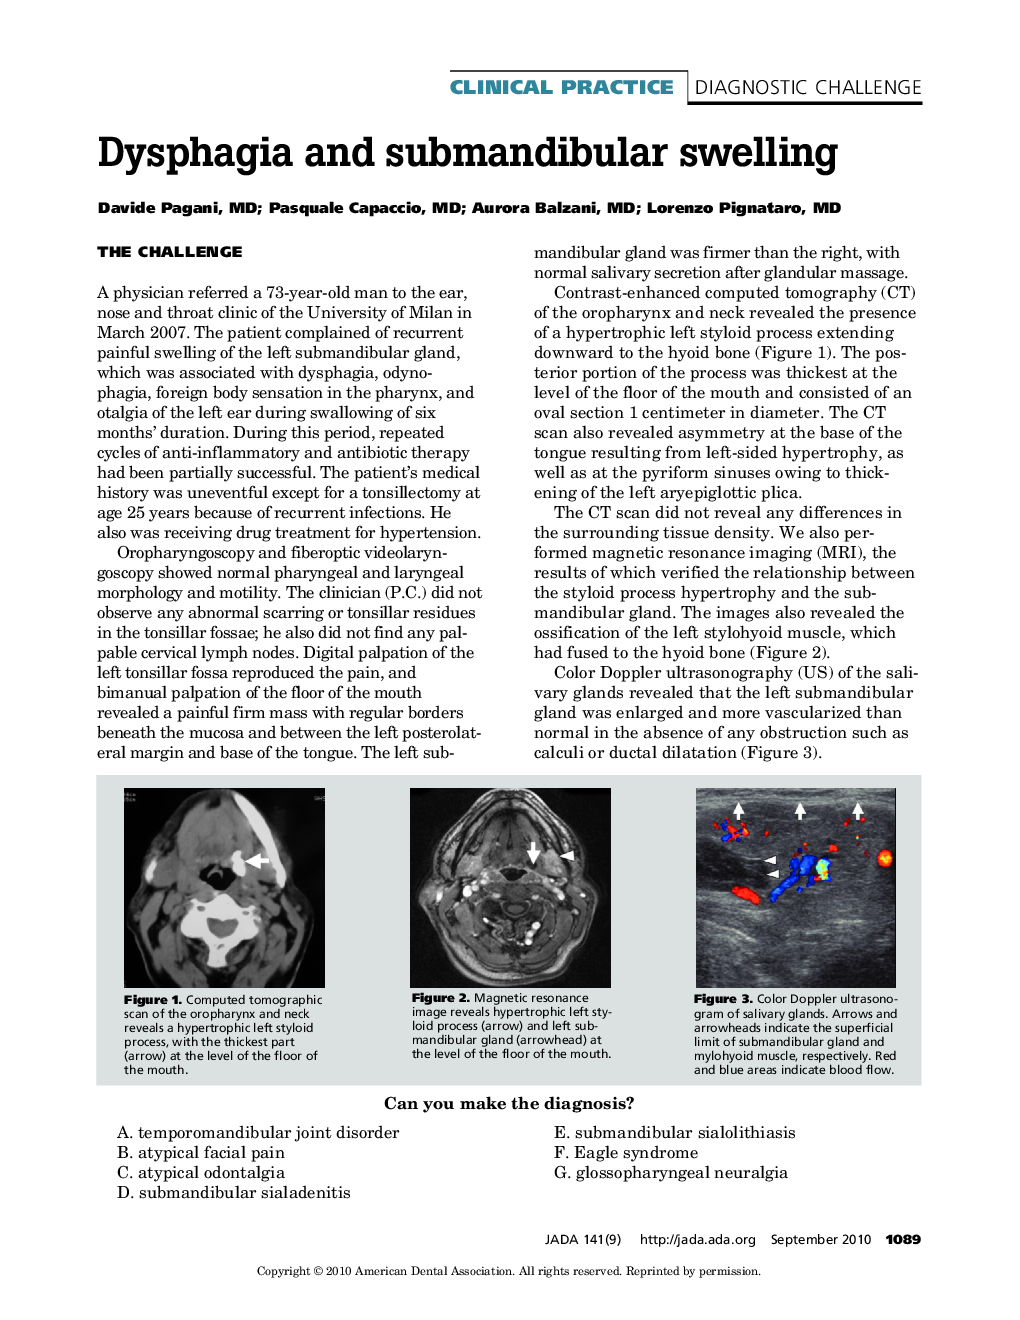 Dysphagia and Submandibular Swelling